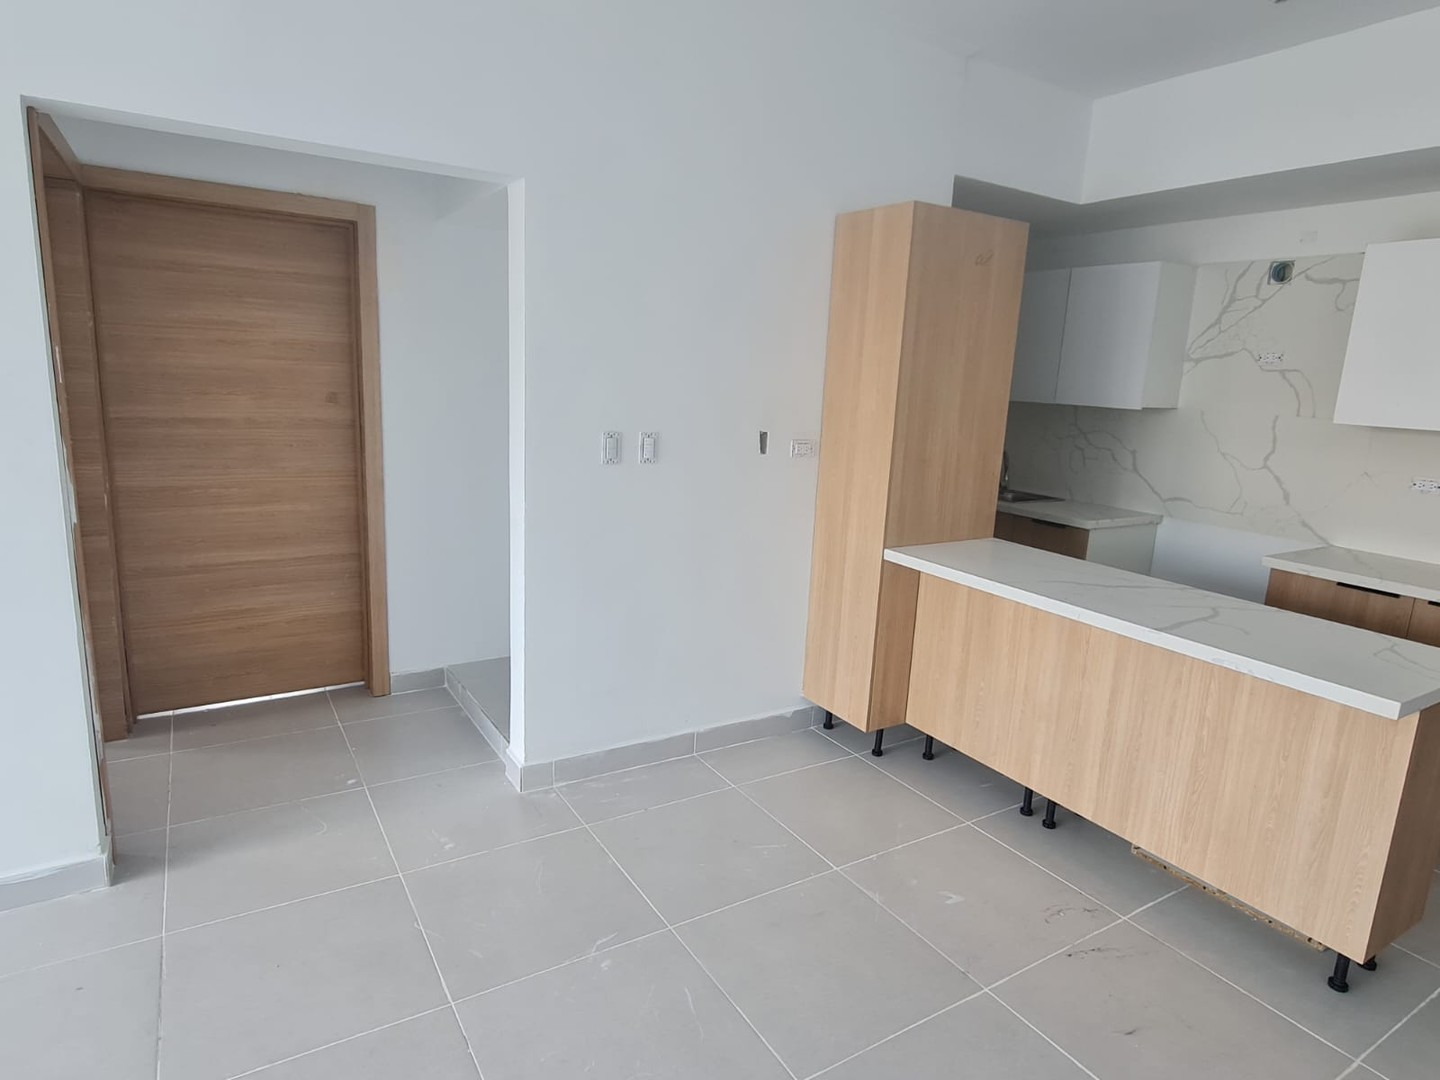 apartamentos - Apartamento Nuevo a Estrenar en Alquiler – Vacío
ZONA UNIVERSITARIA
USD1 ,200.00 4